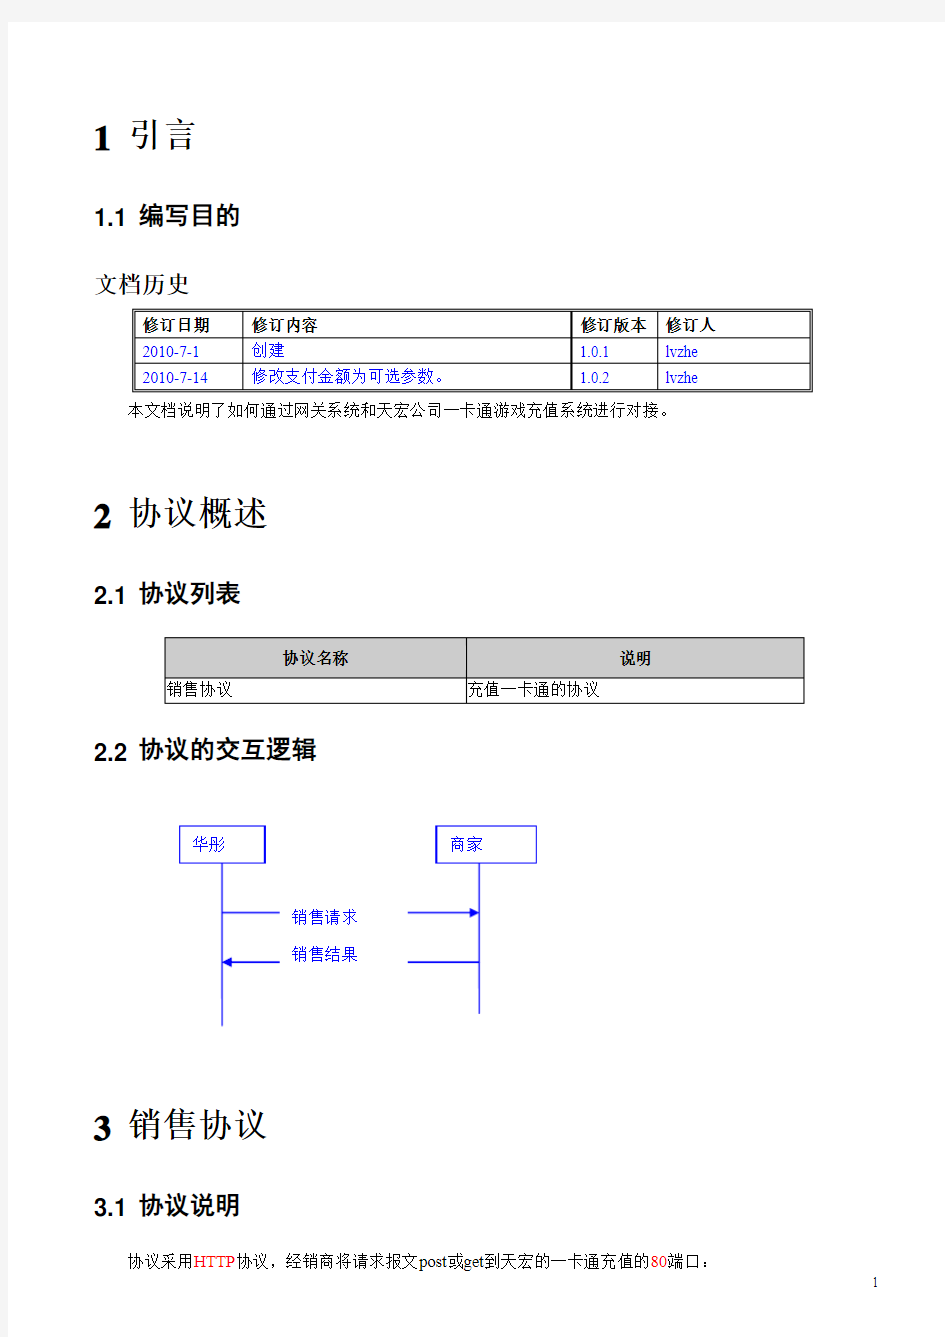 天宏一卡通支付接口说明文档V1.0.2